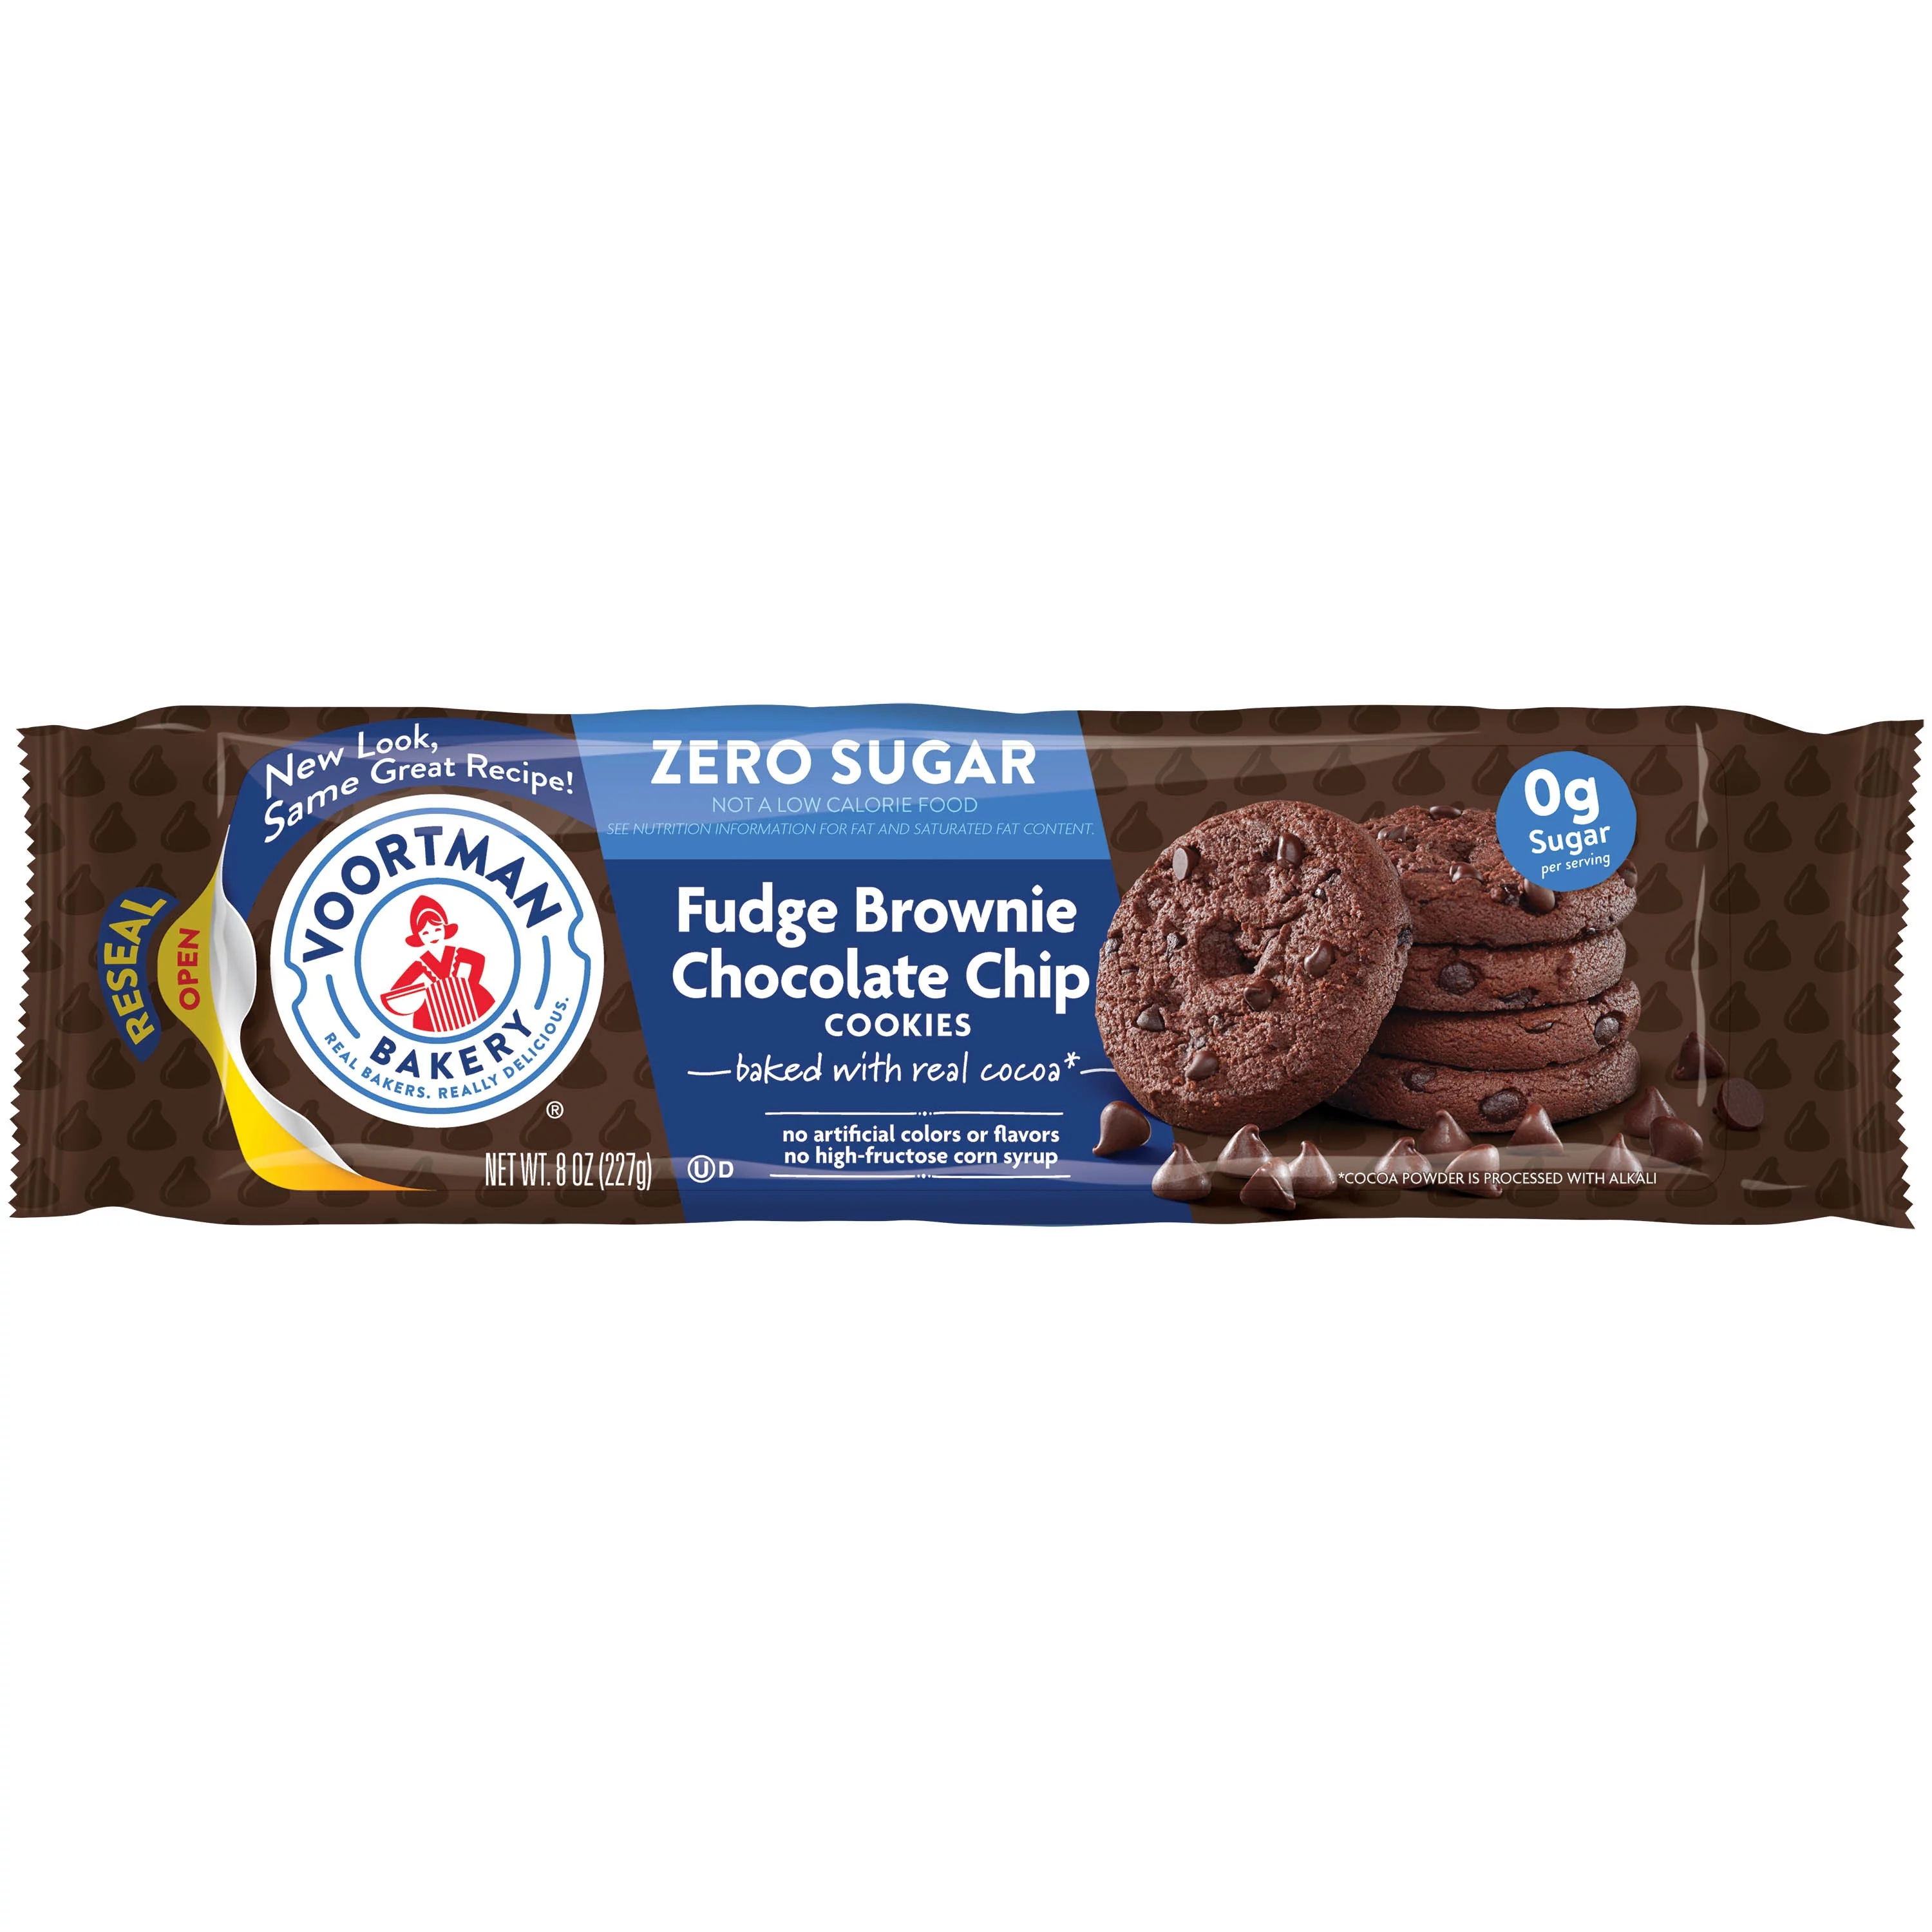 VOORTMAN Bakery Zero Sugar Fudge Brownie Chocolate Chip Cookies 8 oz